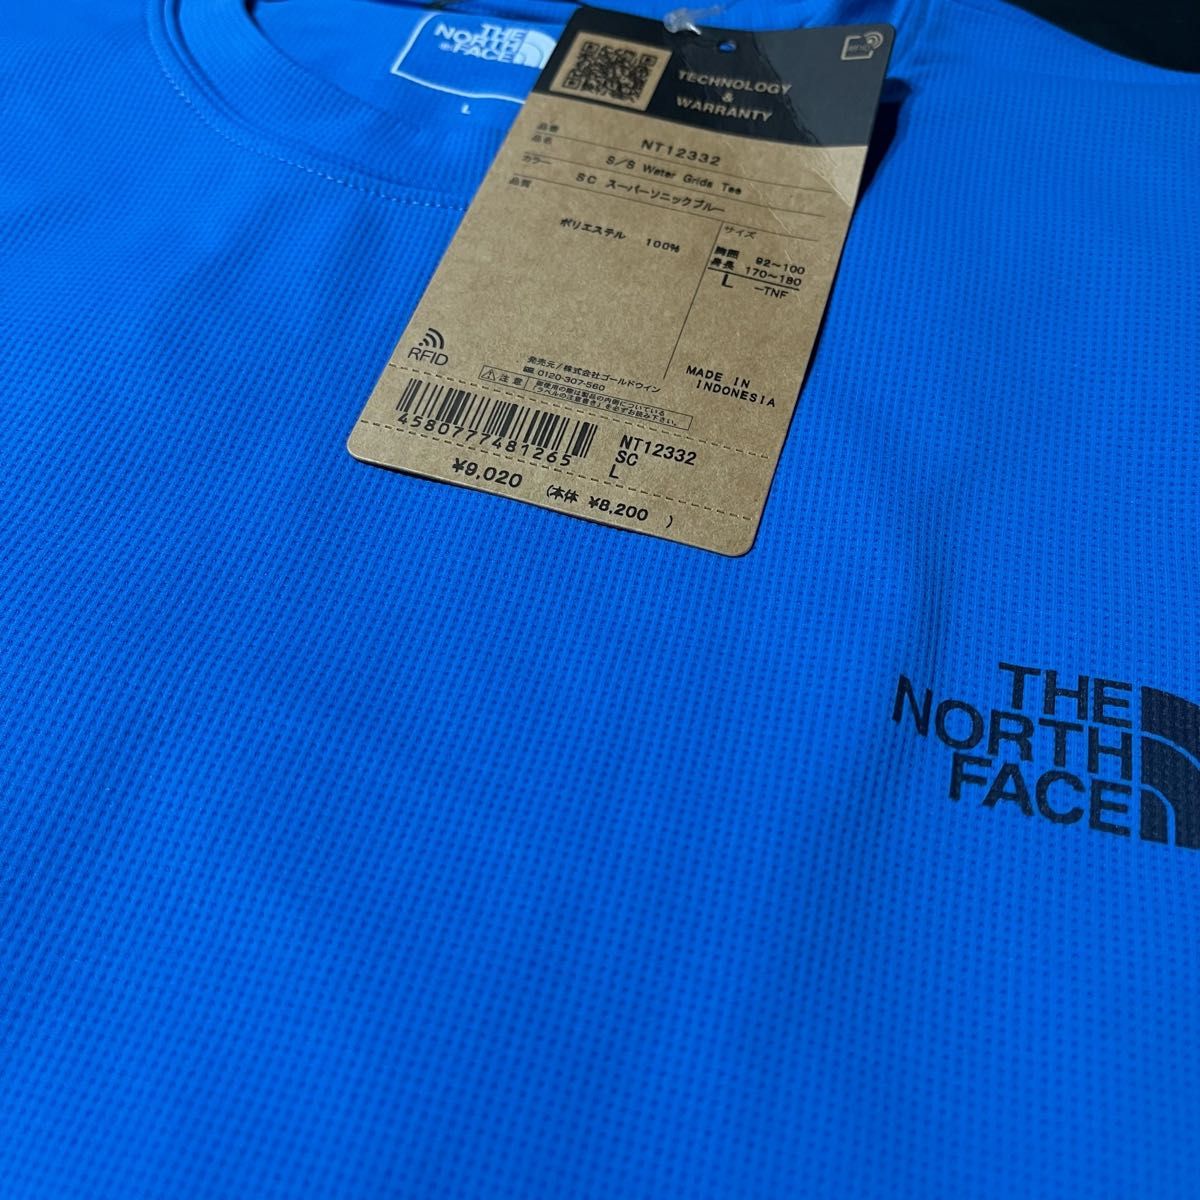 THE NORTH FACE ザノースフェイス 半袖Tシャツ S/S ウォーターグリッズティー NT12332 メンズ２サイズ新品